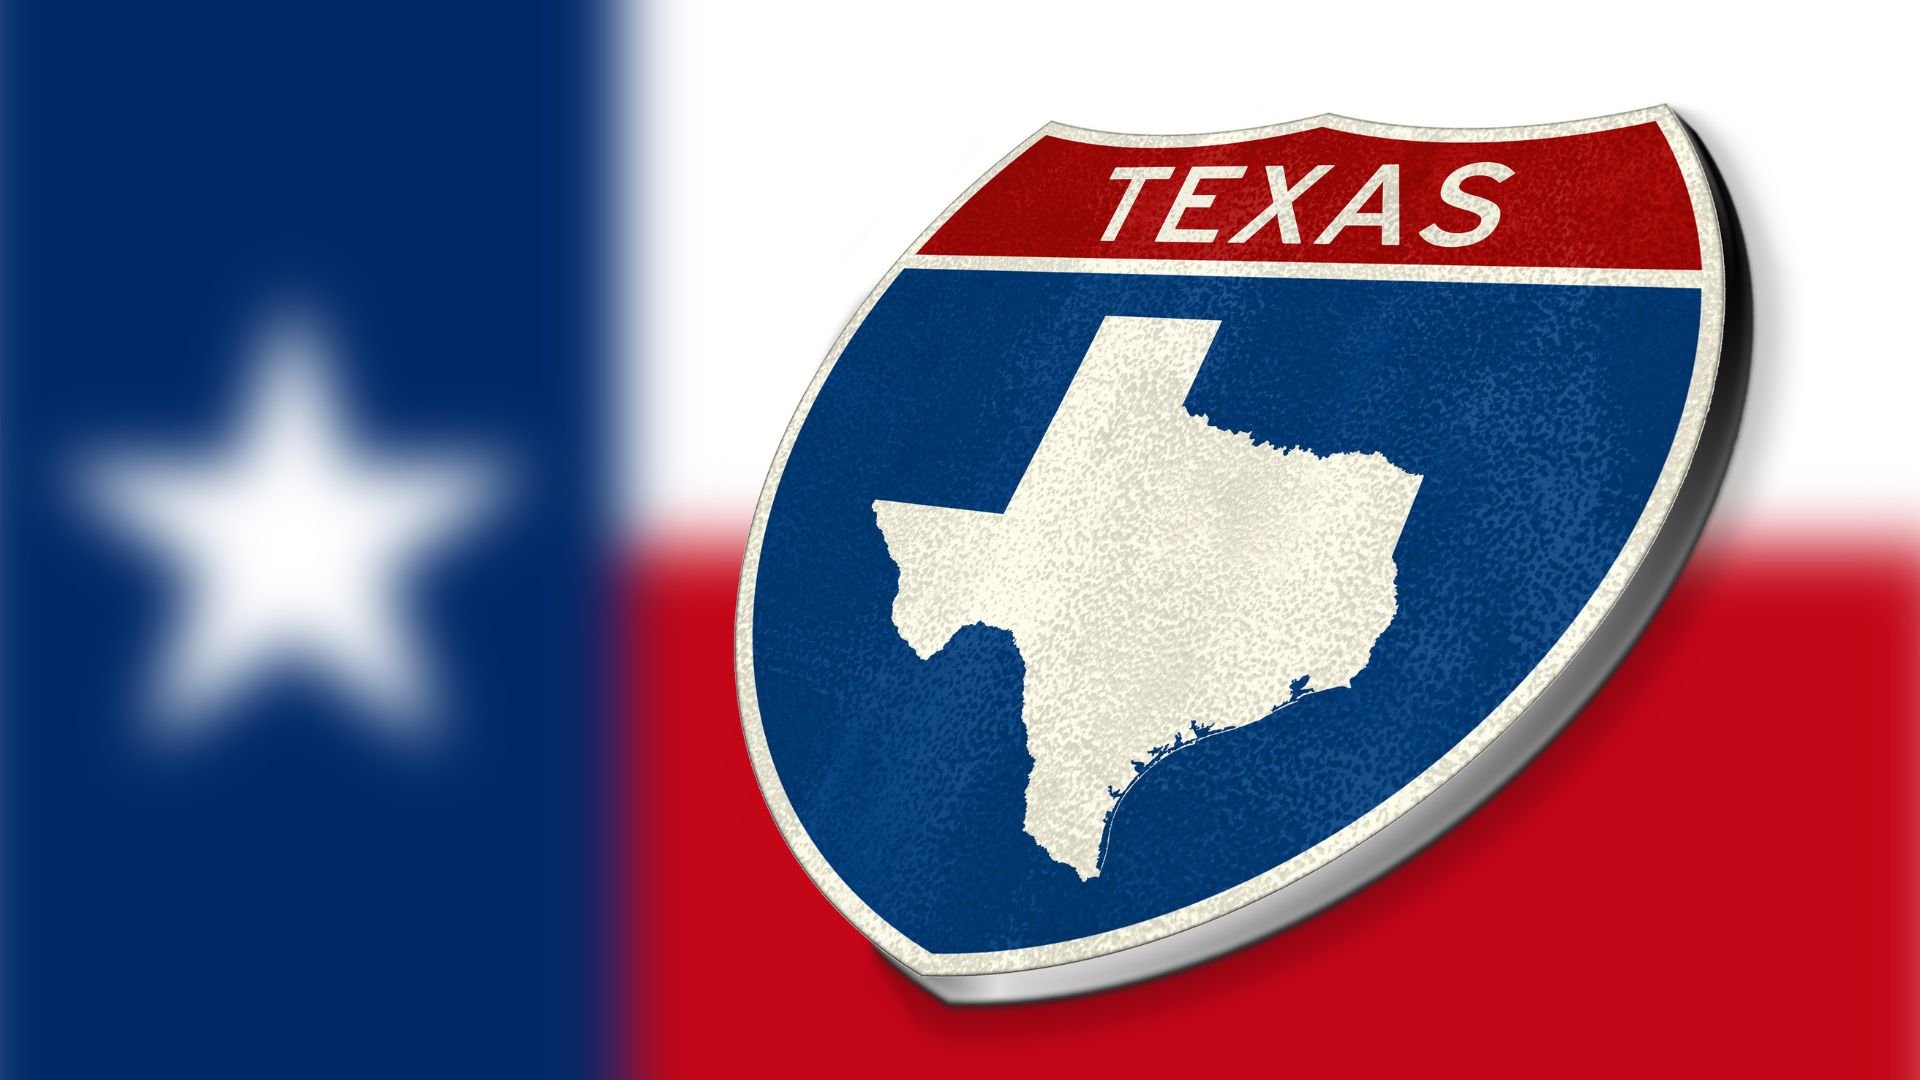 Logo of Texas over flag of Texas